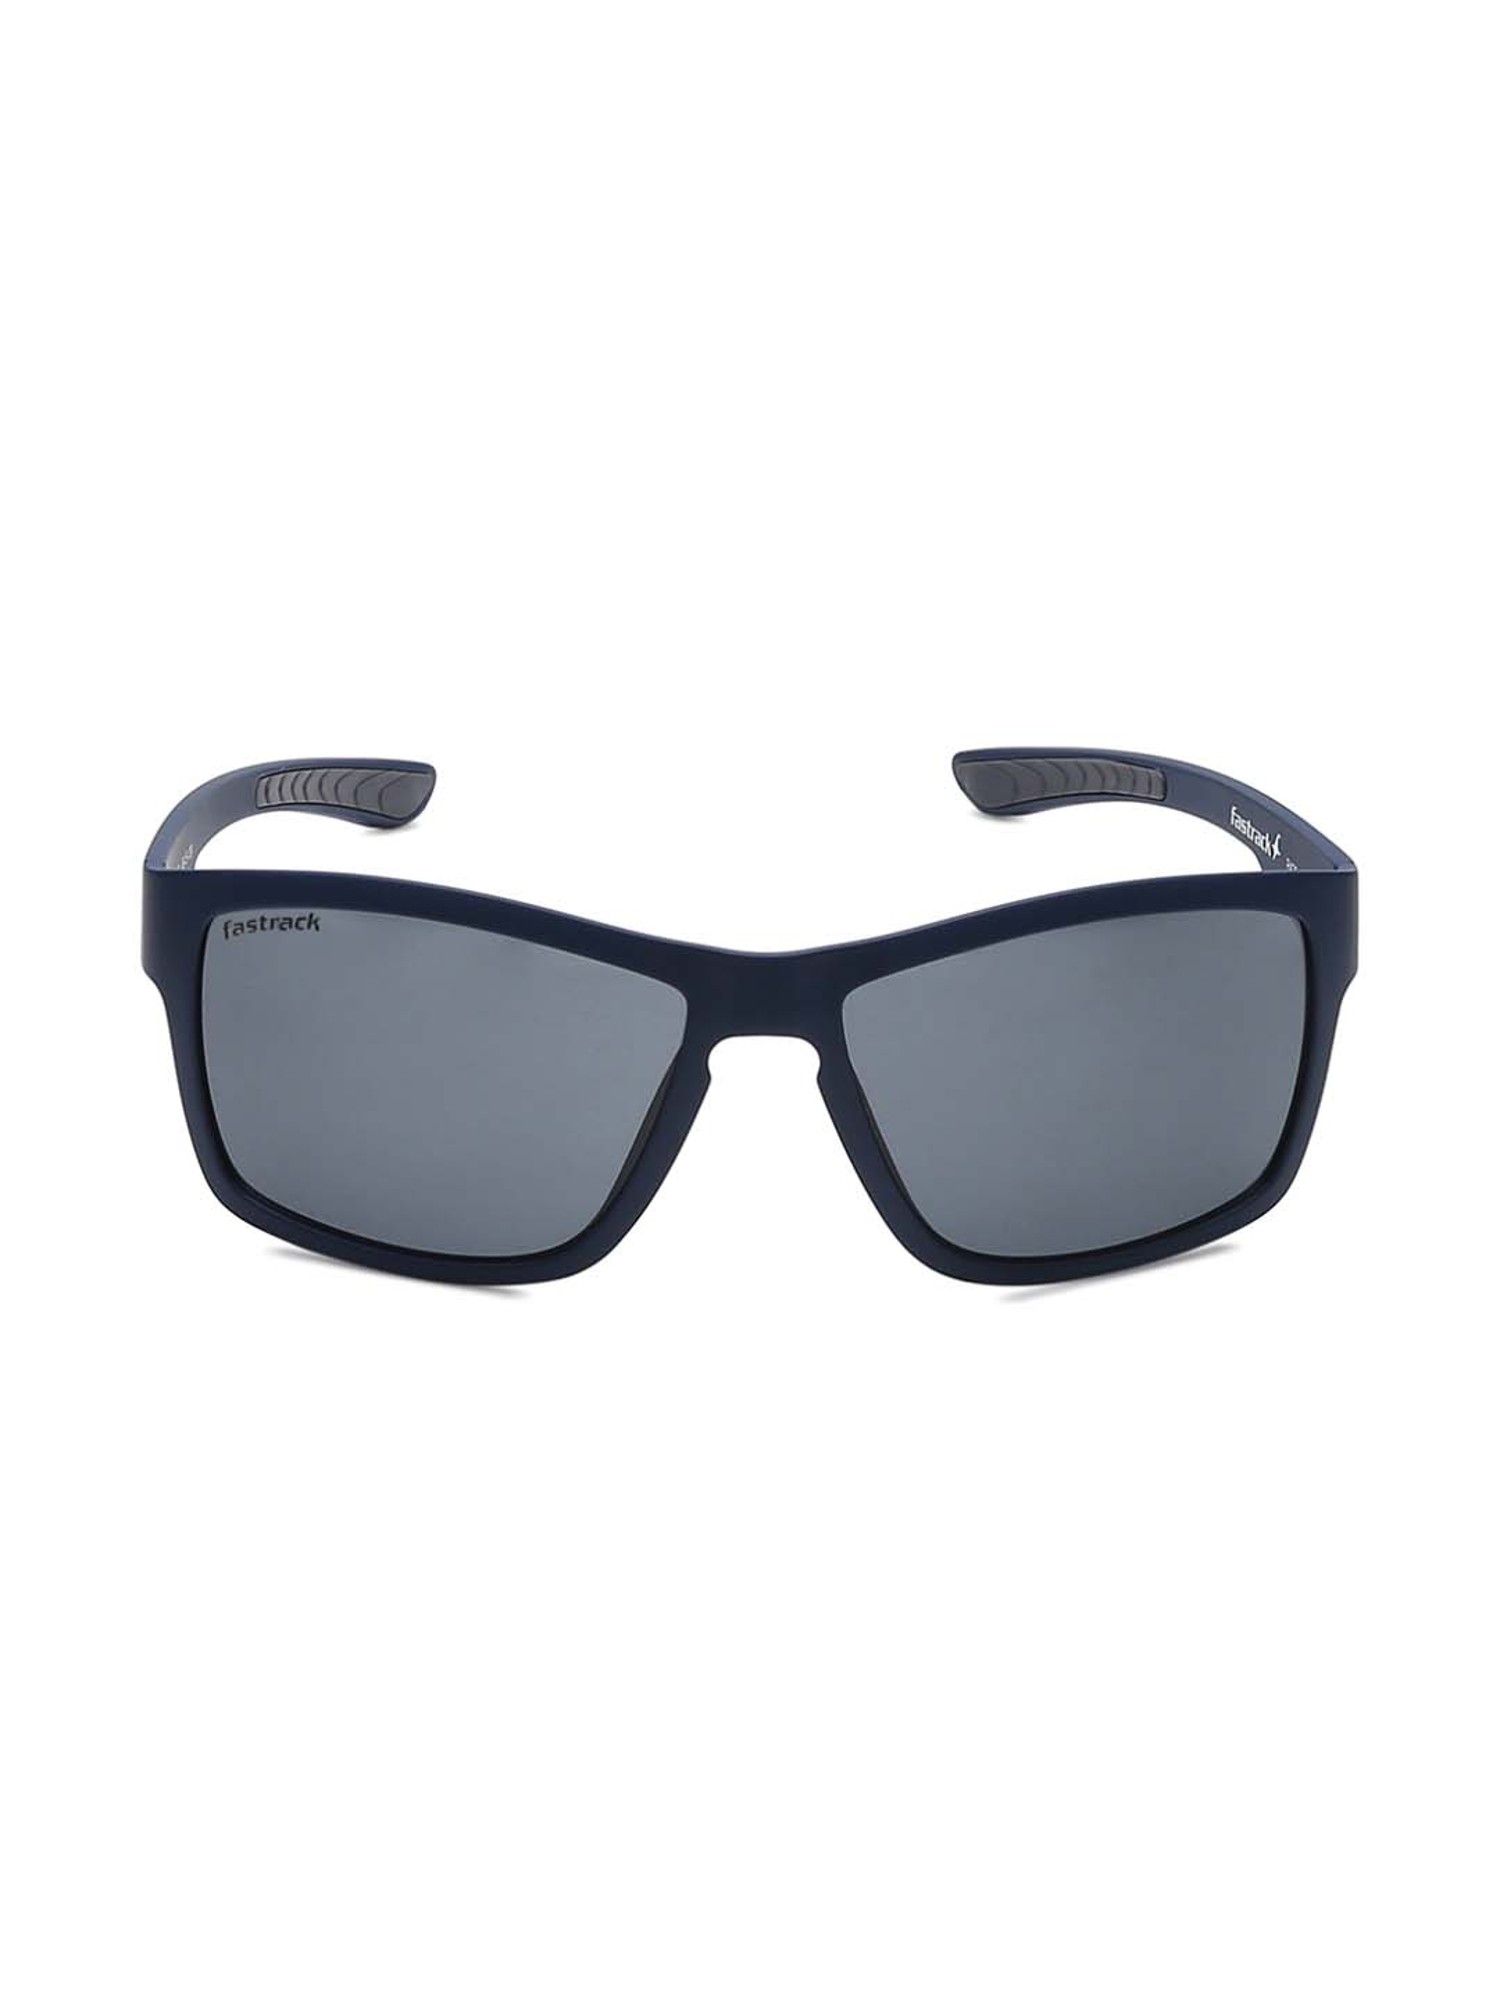 Fastrack Black Rectangle Sunglasses For Men